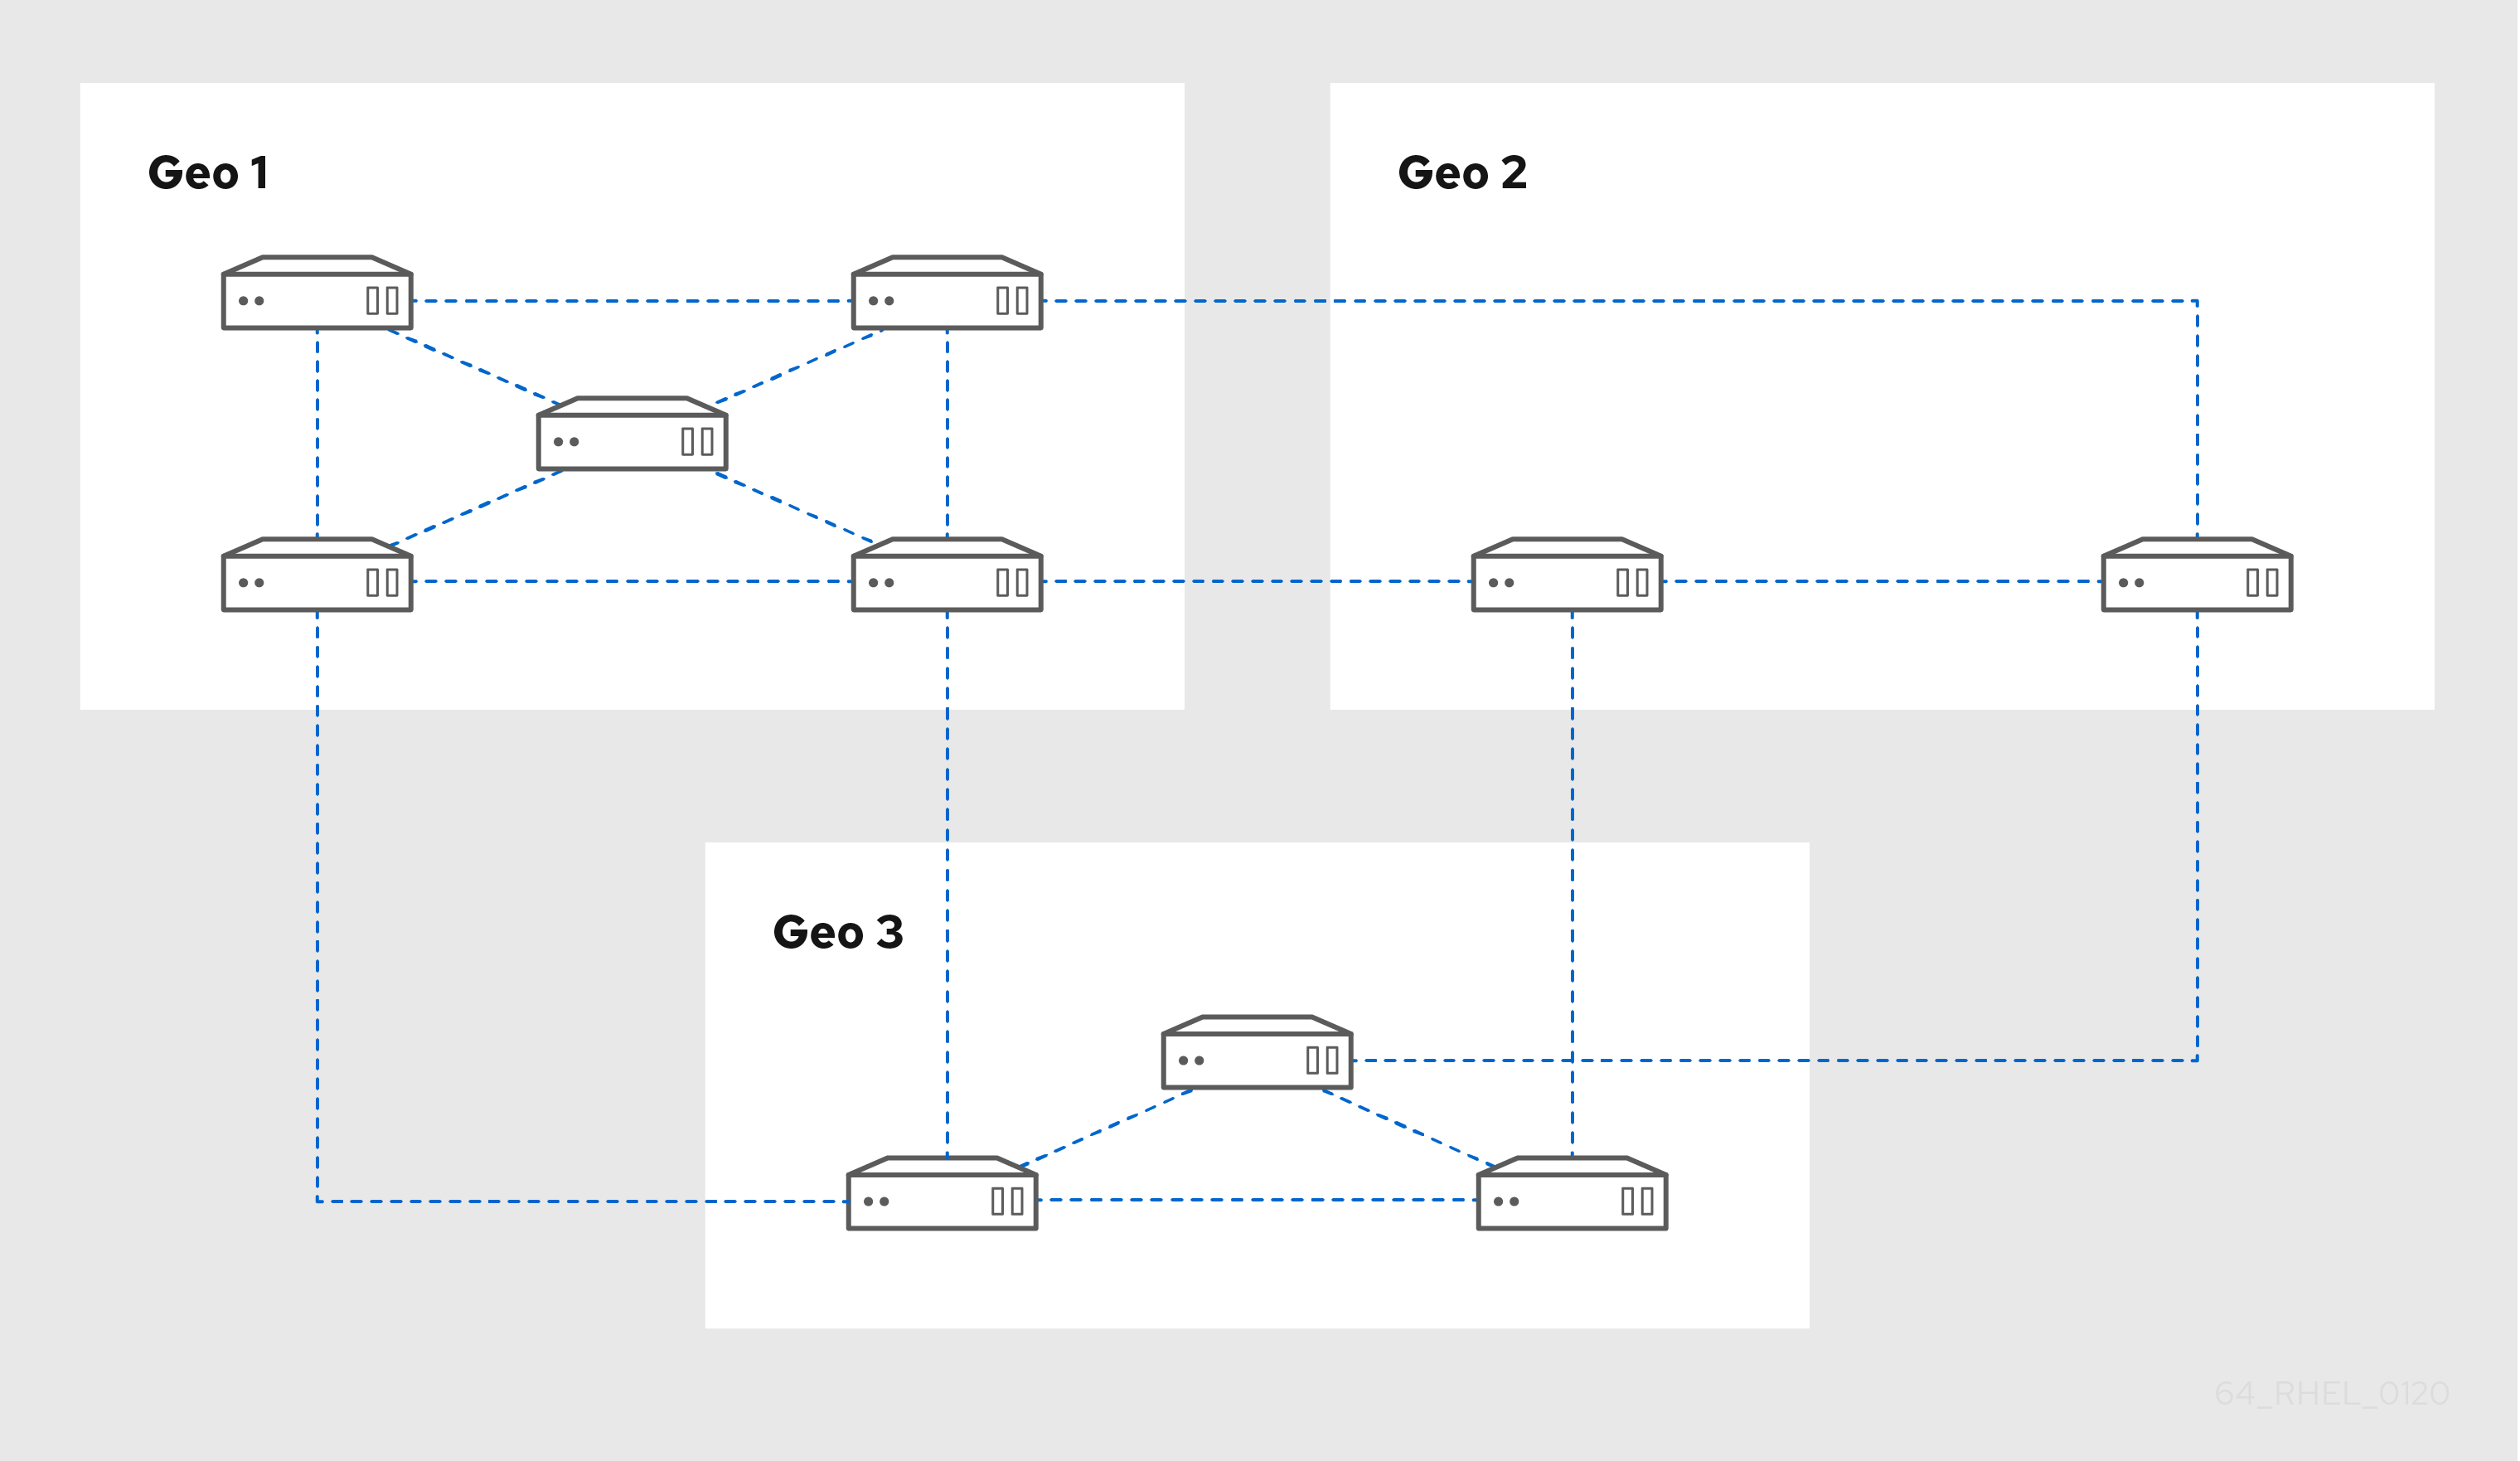 3개의 데이터 센터를 보여주는 다이어그램: Geo 1은 각각 서로 연결된 5개의 서버가 있습니다. Geo 2에는 두 개의 서버가 서로 연결되어 있습니다. Geo 3에는 세 개의 서버가 있습니다. 각 Geo에서 두 개의 서버를 다음 Geo에 연결하는 두 개의 서버가 있습니다.